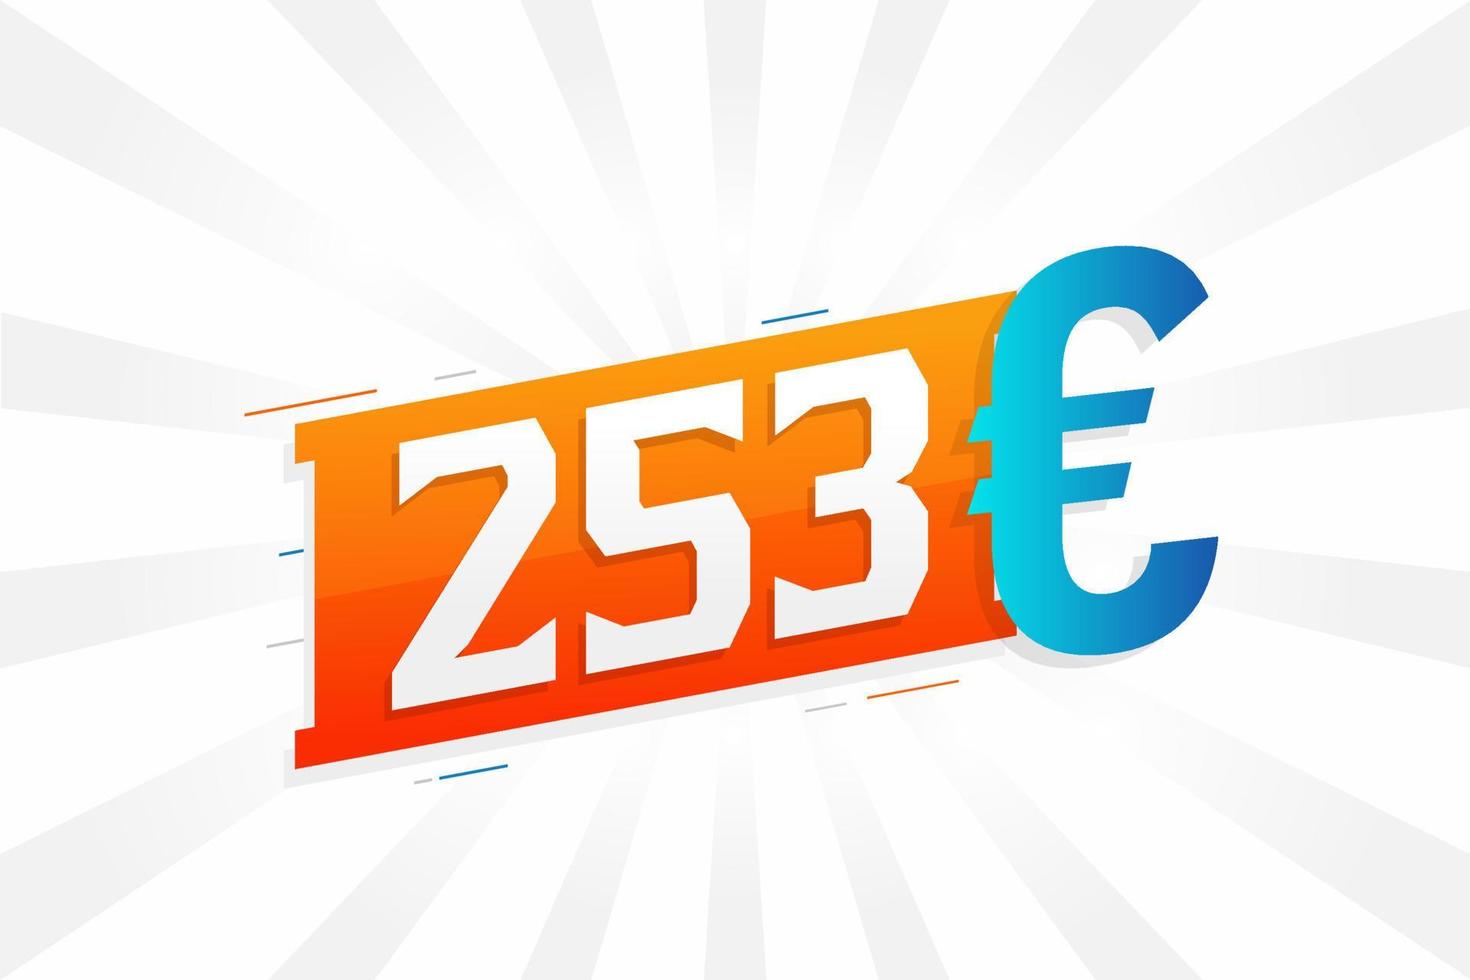 253 Euro Currency vector text symbol. 253 Euro European Union Money stock vector